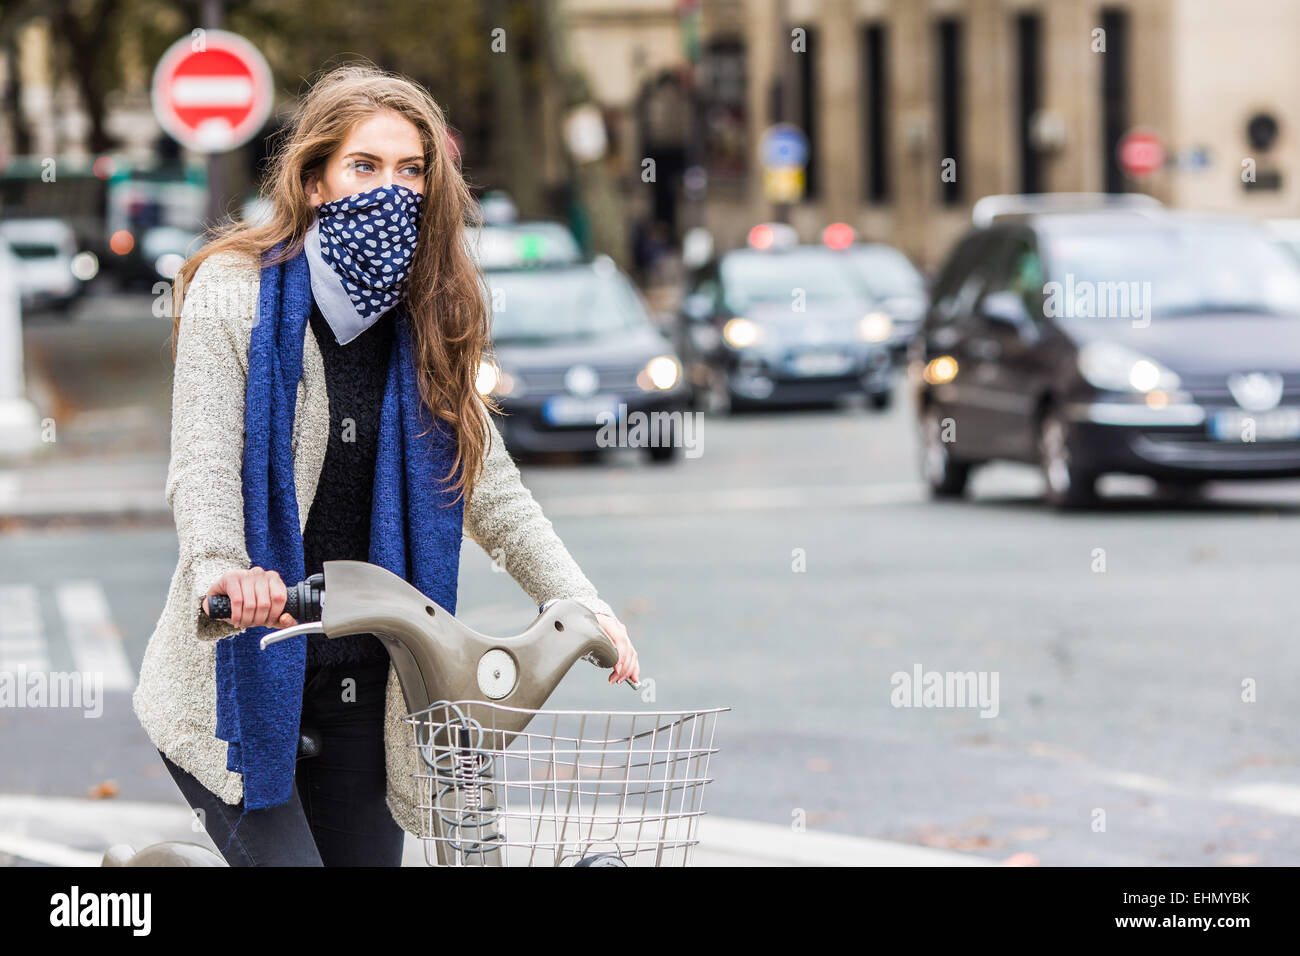 Frau reitet ein Fahrrad in einem städtischen Umfeld. Stockfoto